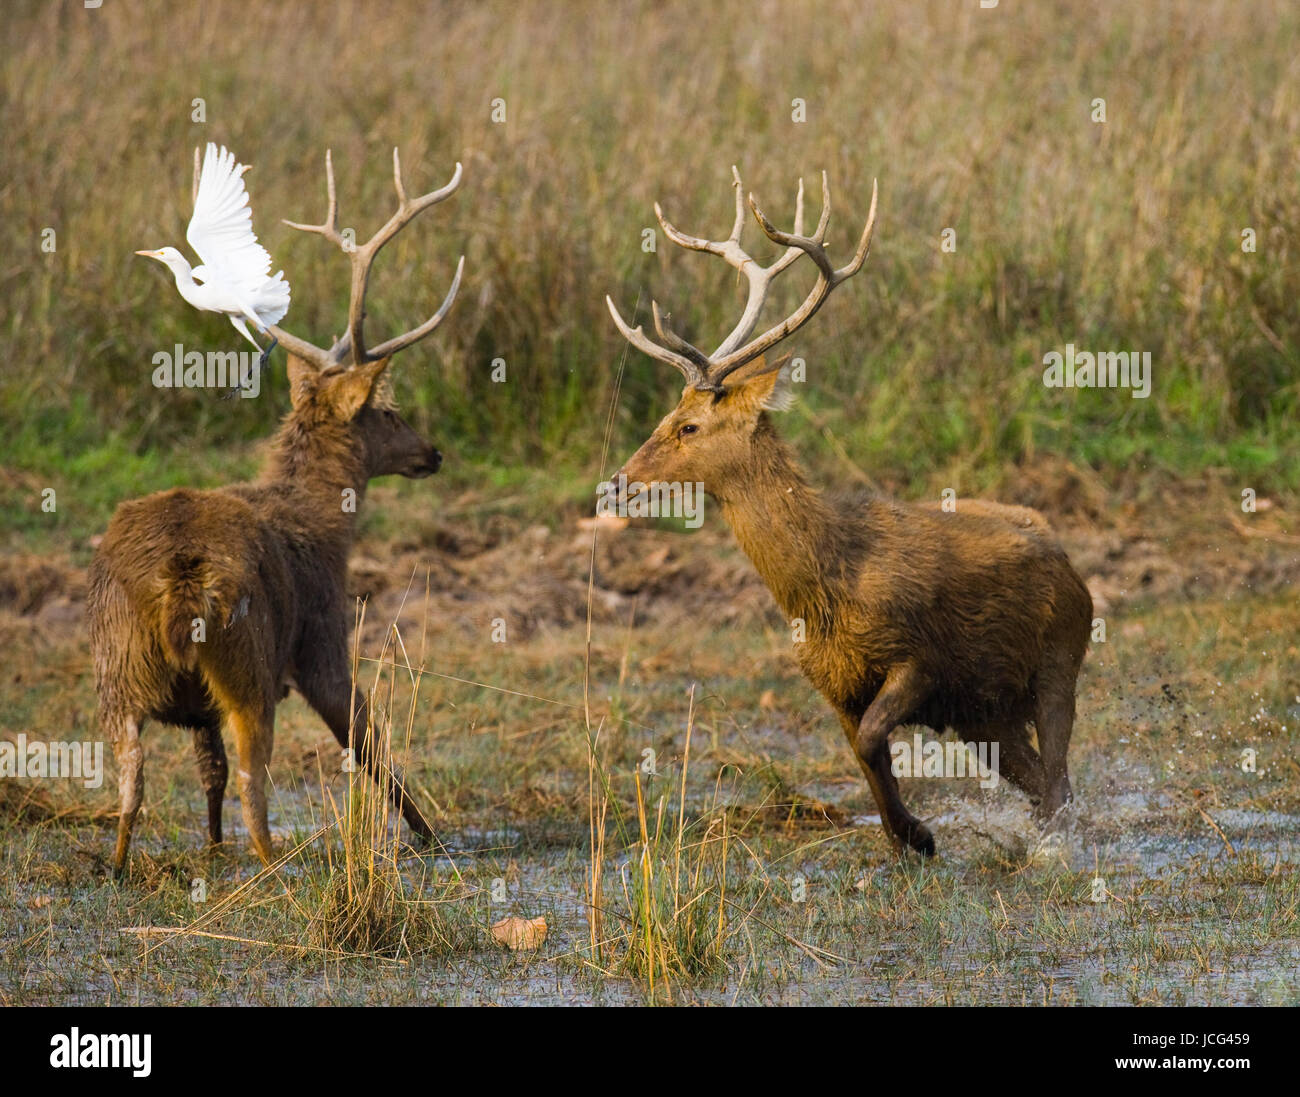 Zwei Hirsche kämpfen sich in der Paarungszeit in freier Wildbahn. Indien. Nationalpark. Stockfoto